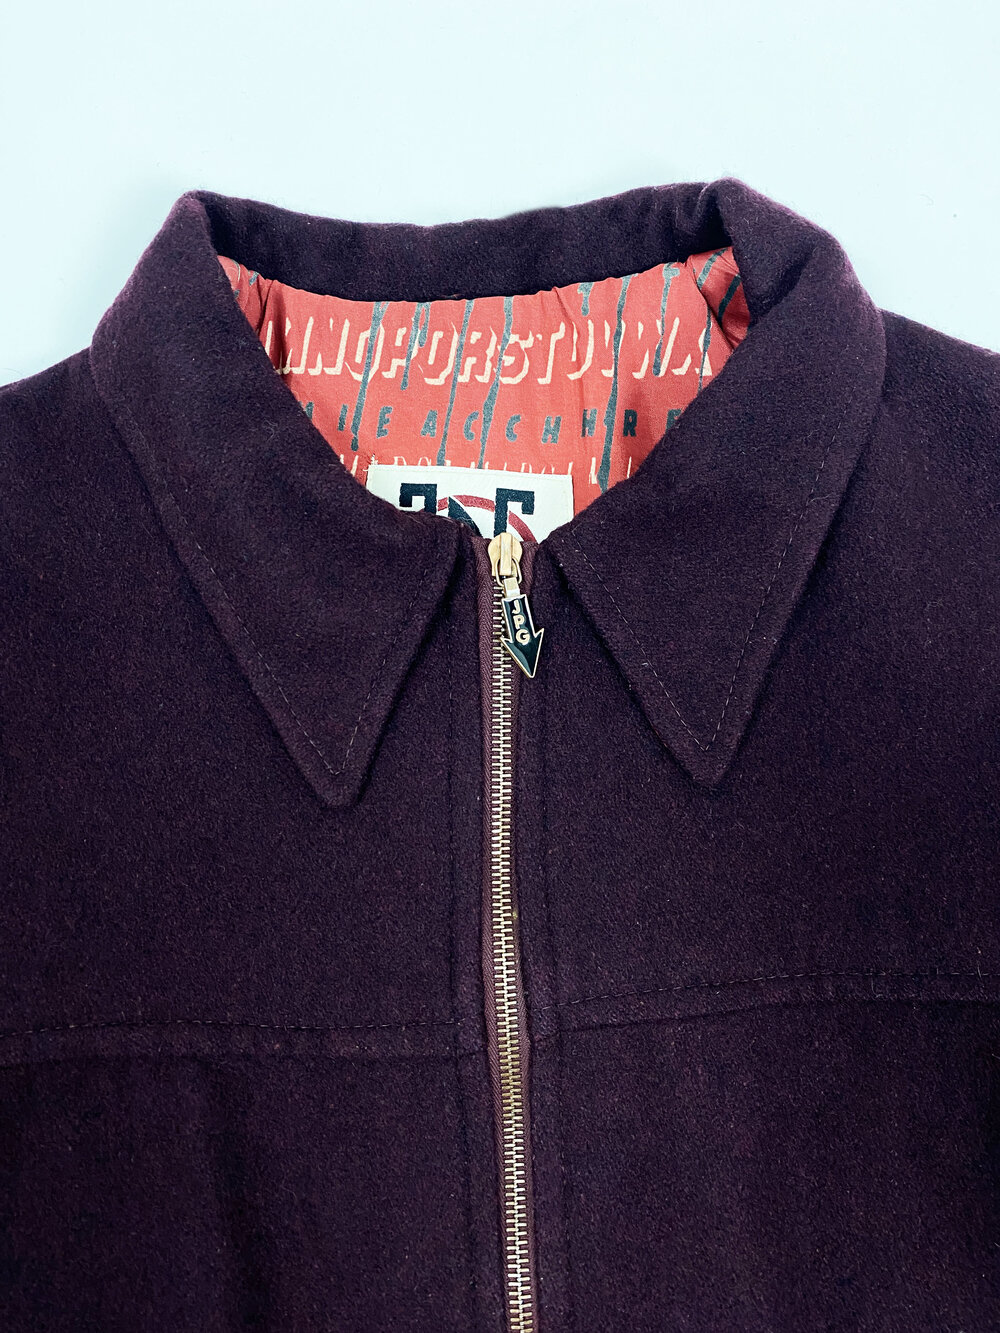 Jean Paul Gaultier 90s wool zip jacket — JAMES VELORIA